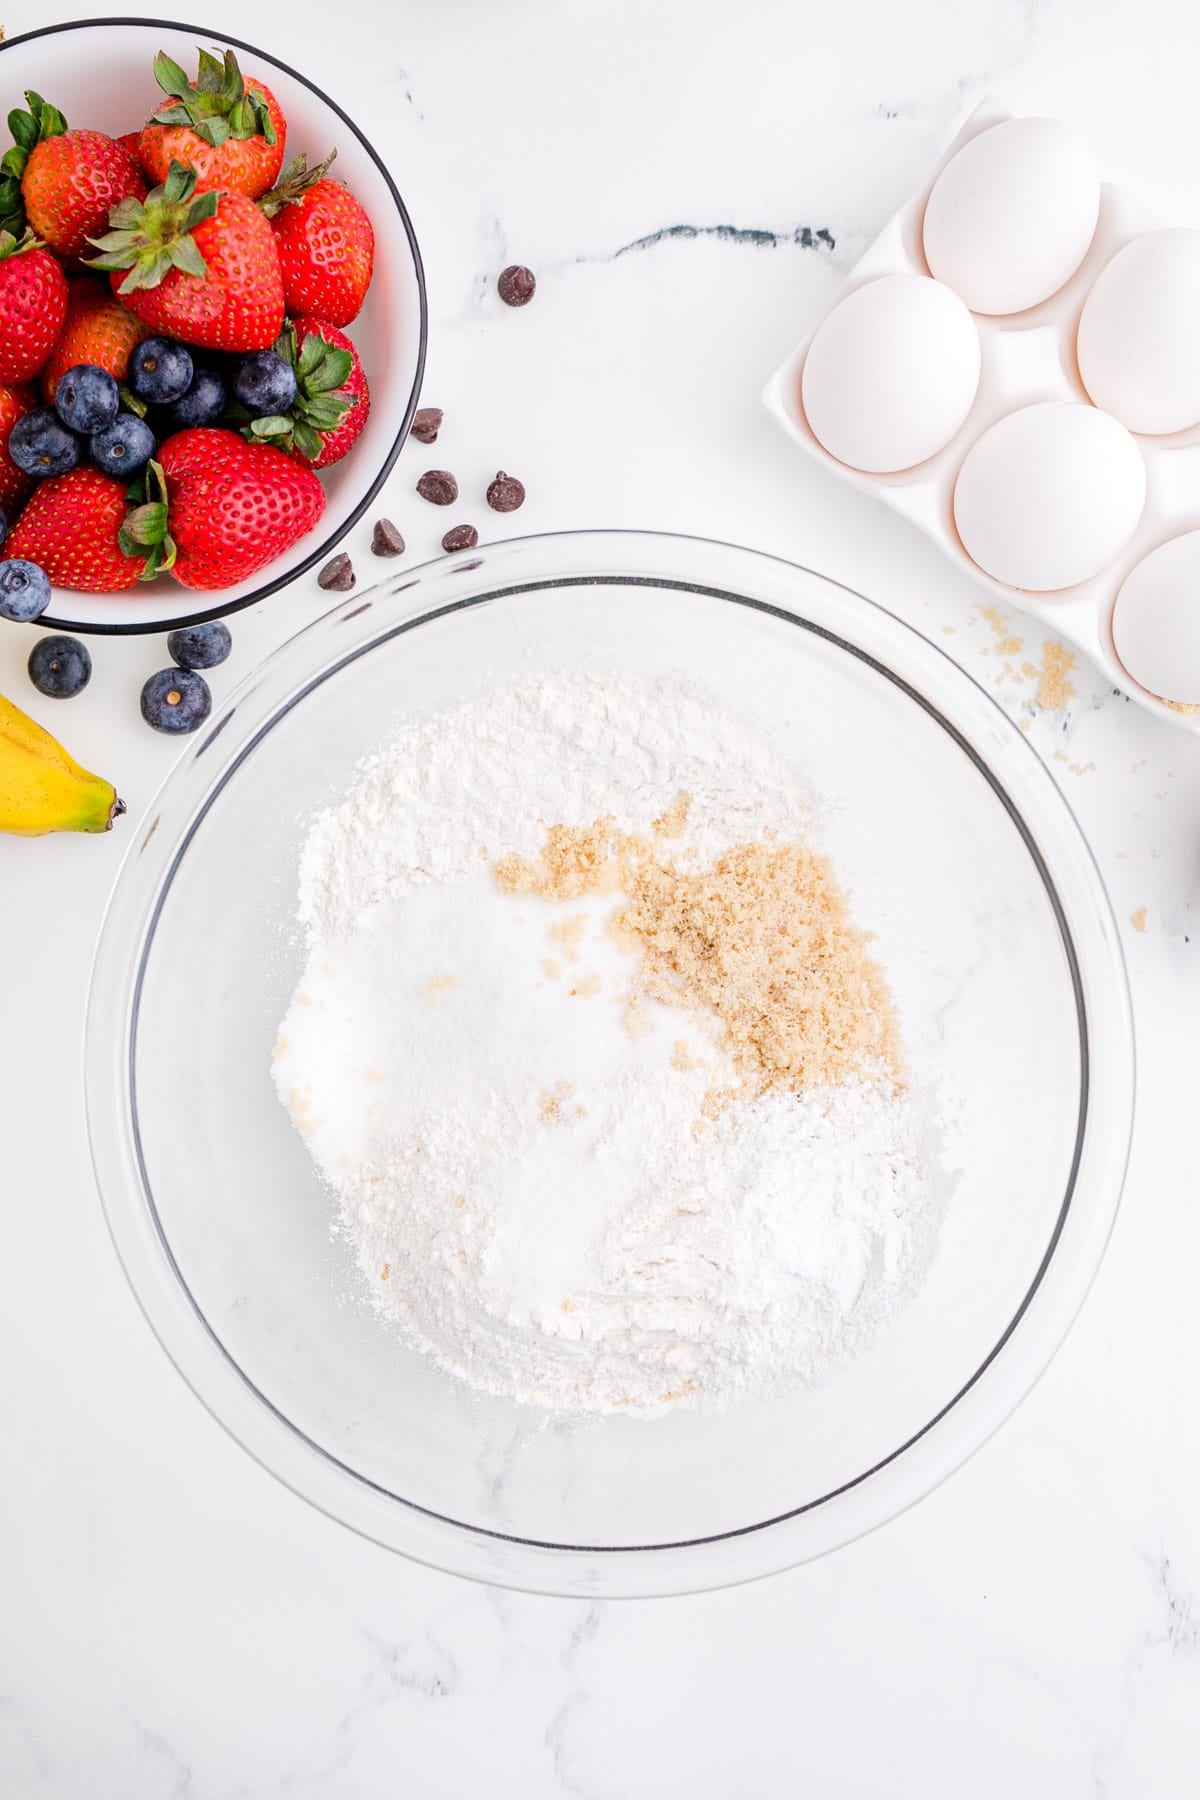 flour, white sugar, brown sugar, baking powder, and salt in a clear bowl next to fresh eggs and fresh berries